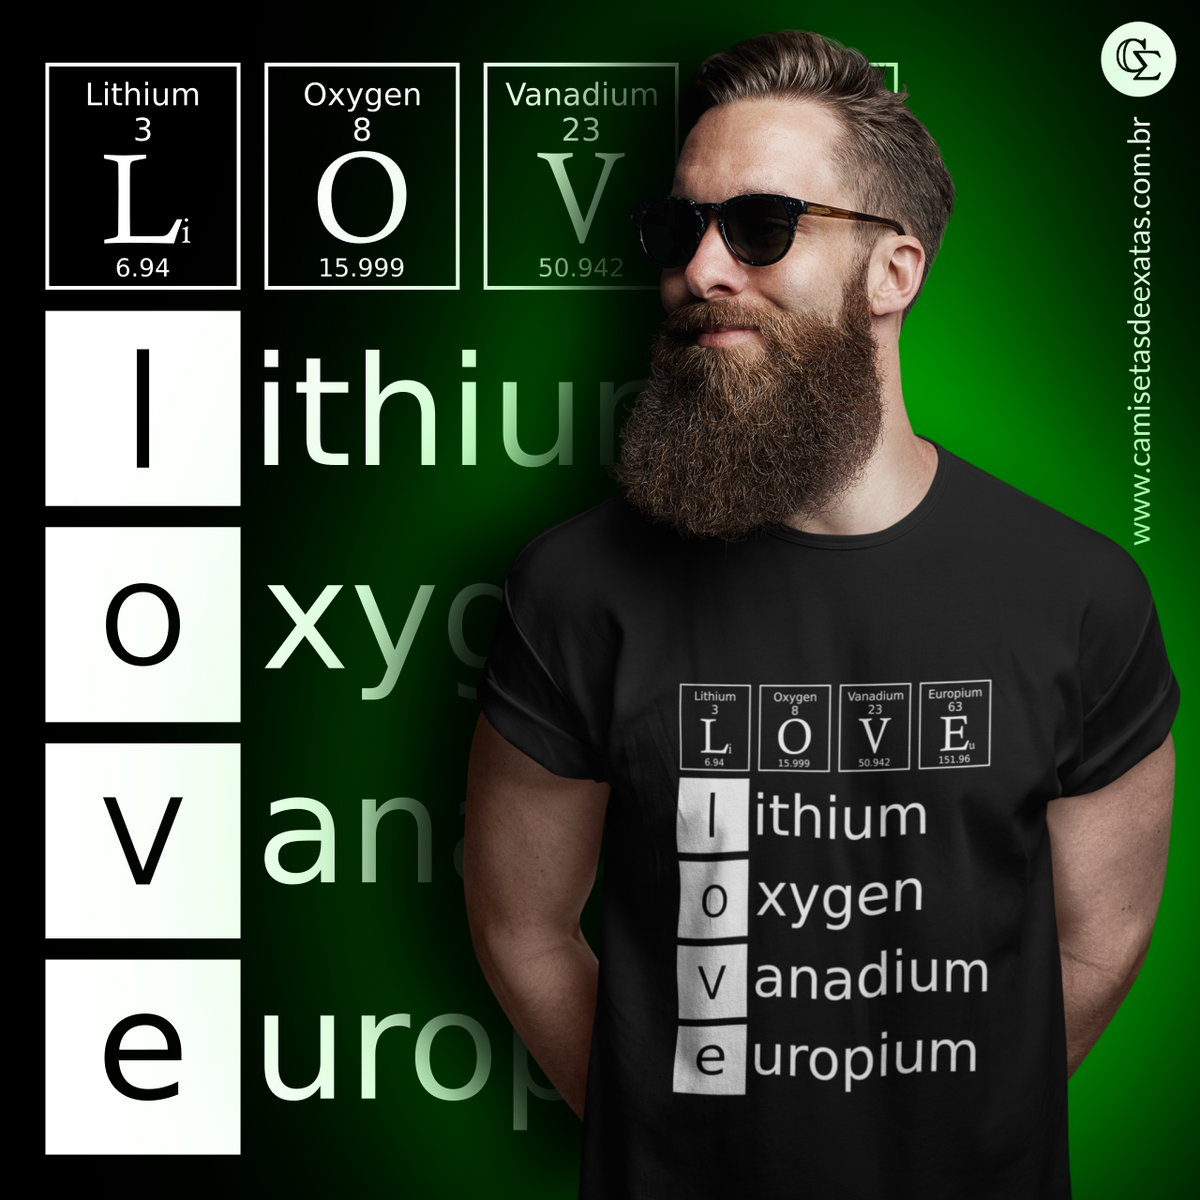 Nome do produto: LOVE: Li, 0, V, Eu [1]